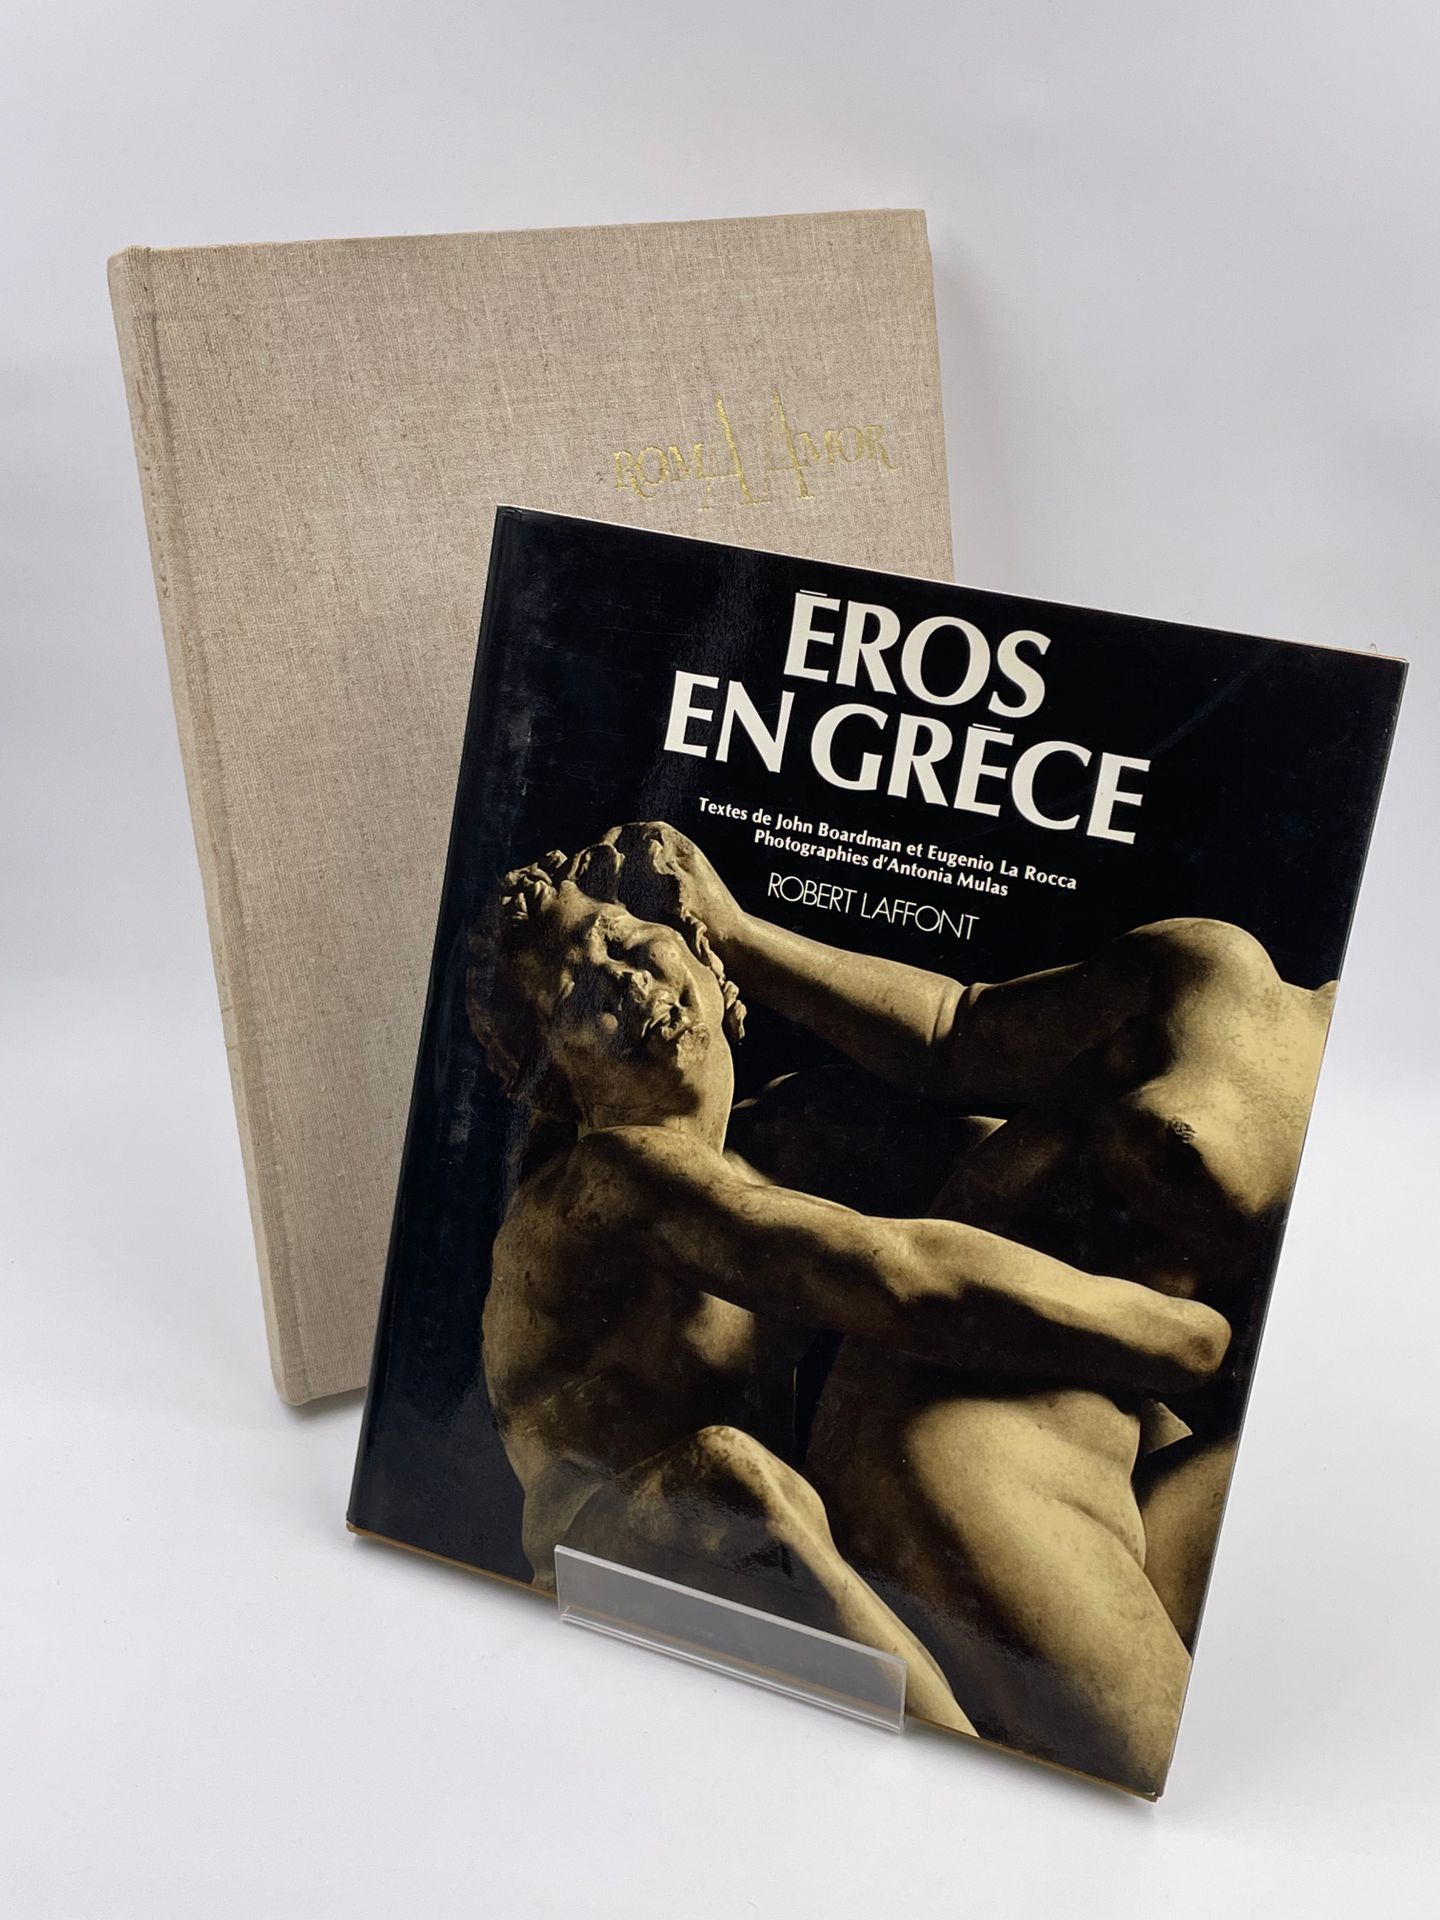 Null 2 volúmenes : 

- EROS EN GRECIA", J. Boardman, Eugenio La Rocca, Phot.Anto&hellip;